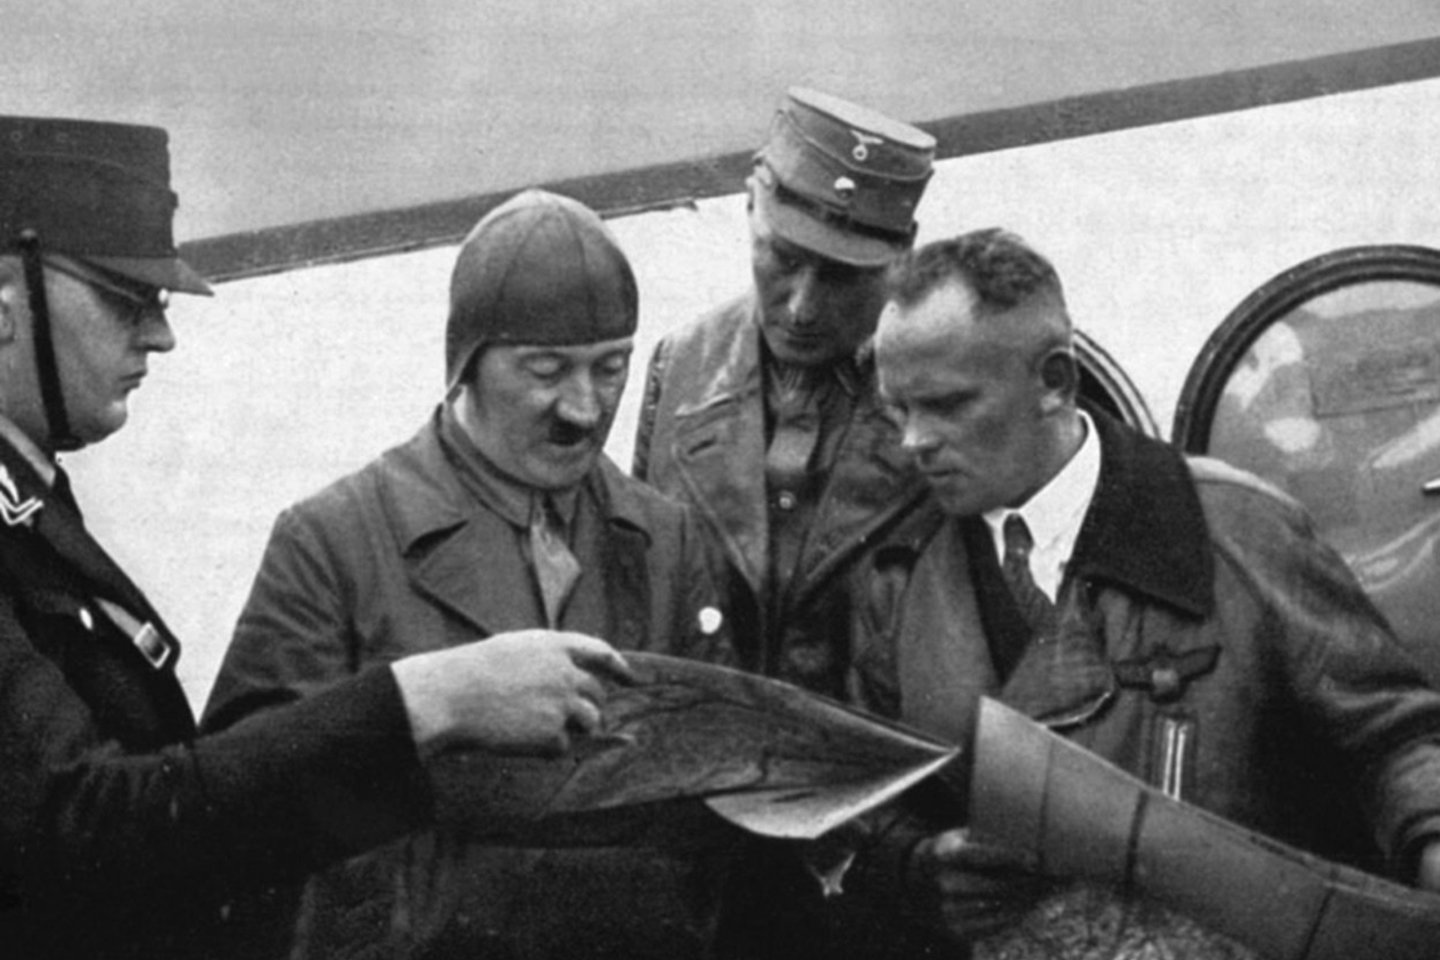  A. Hitleris ir H. Bauras derina skrydžių maršrutą.<br> Leidėjų nuotr.